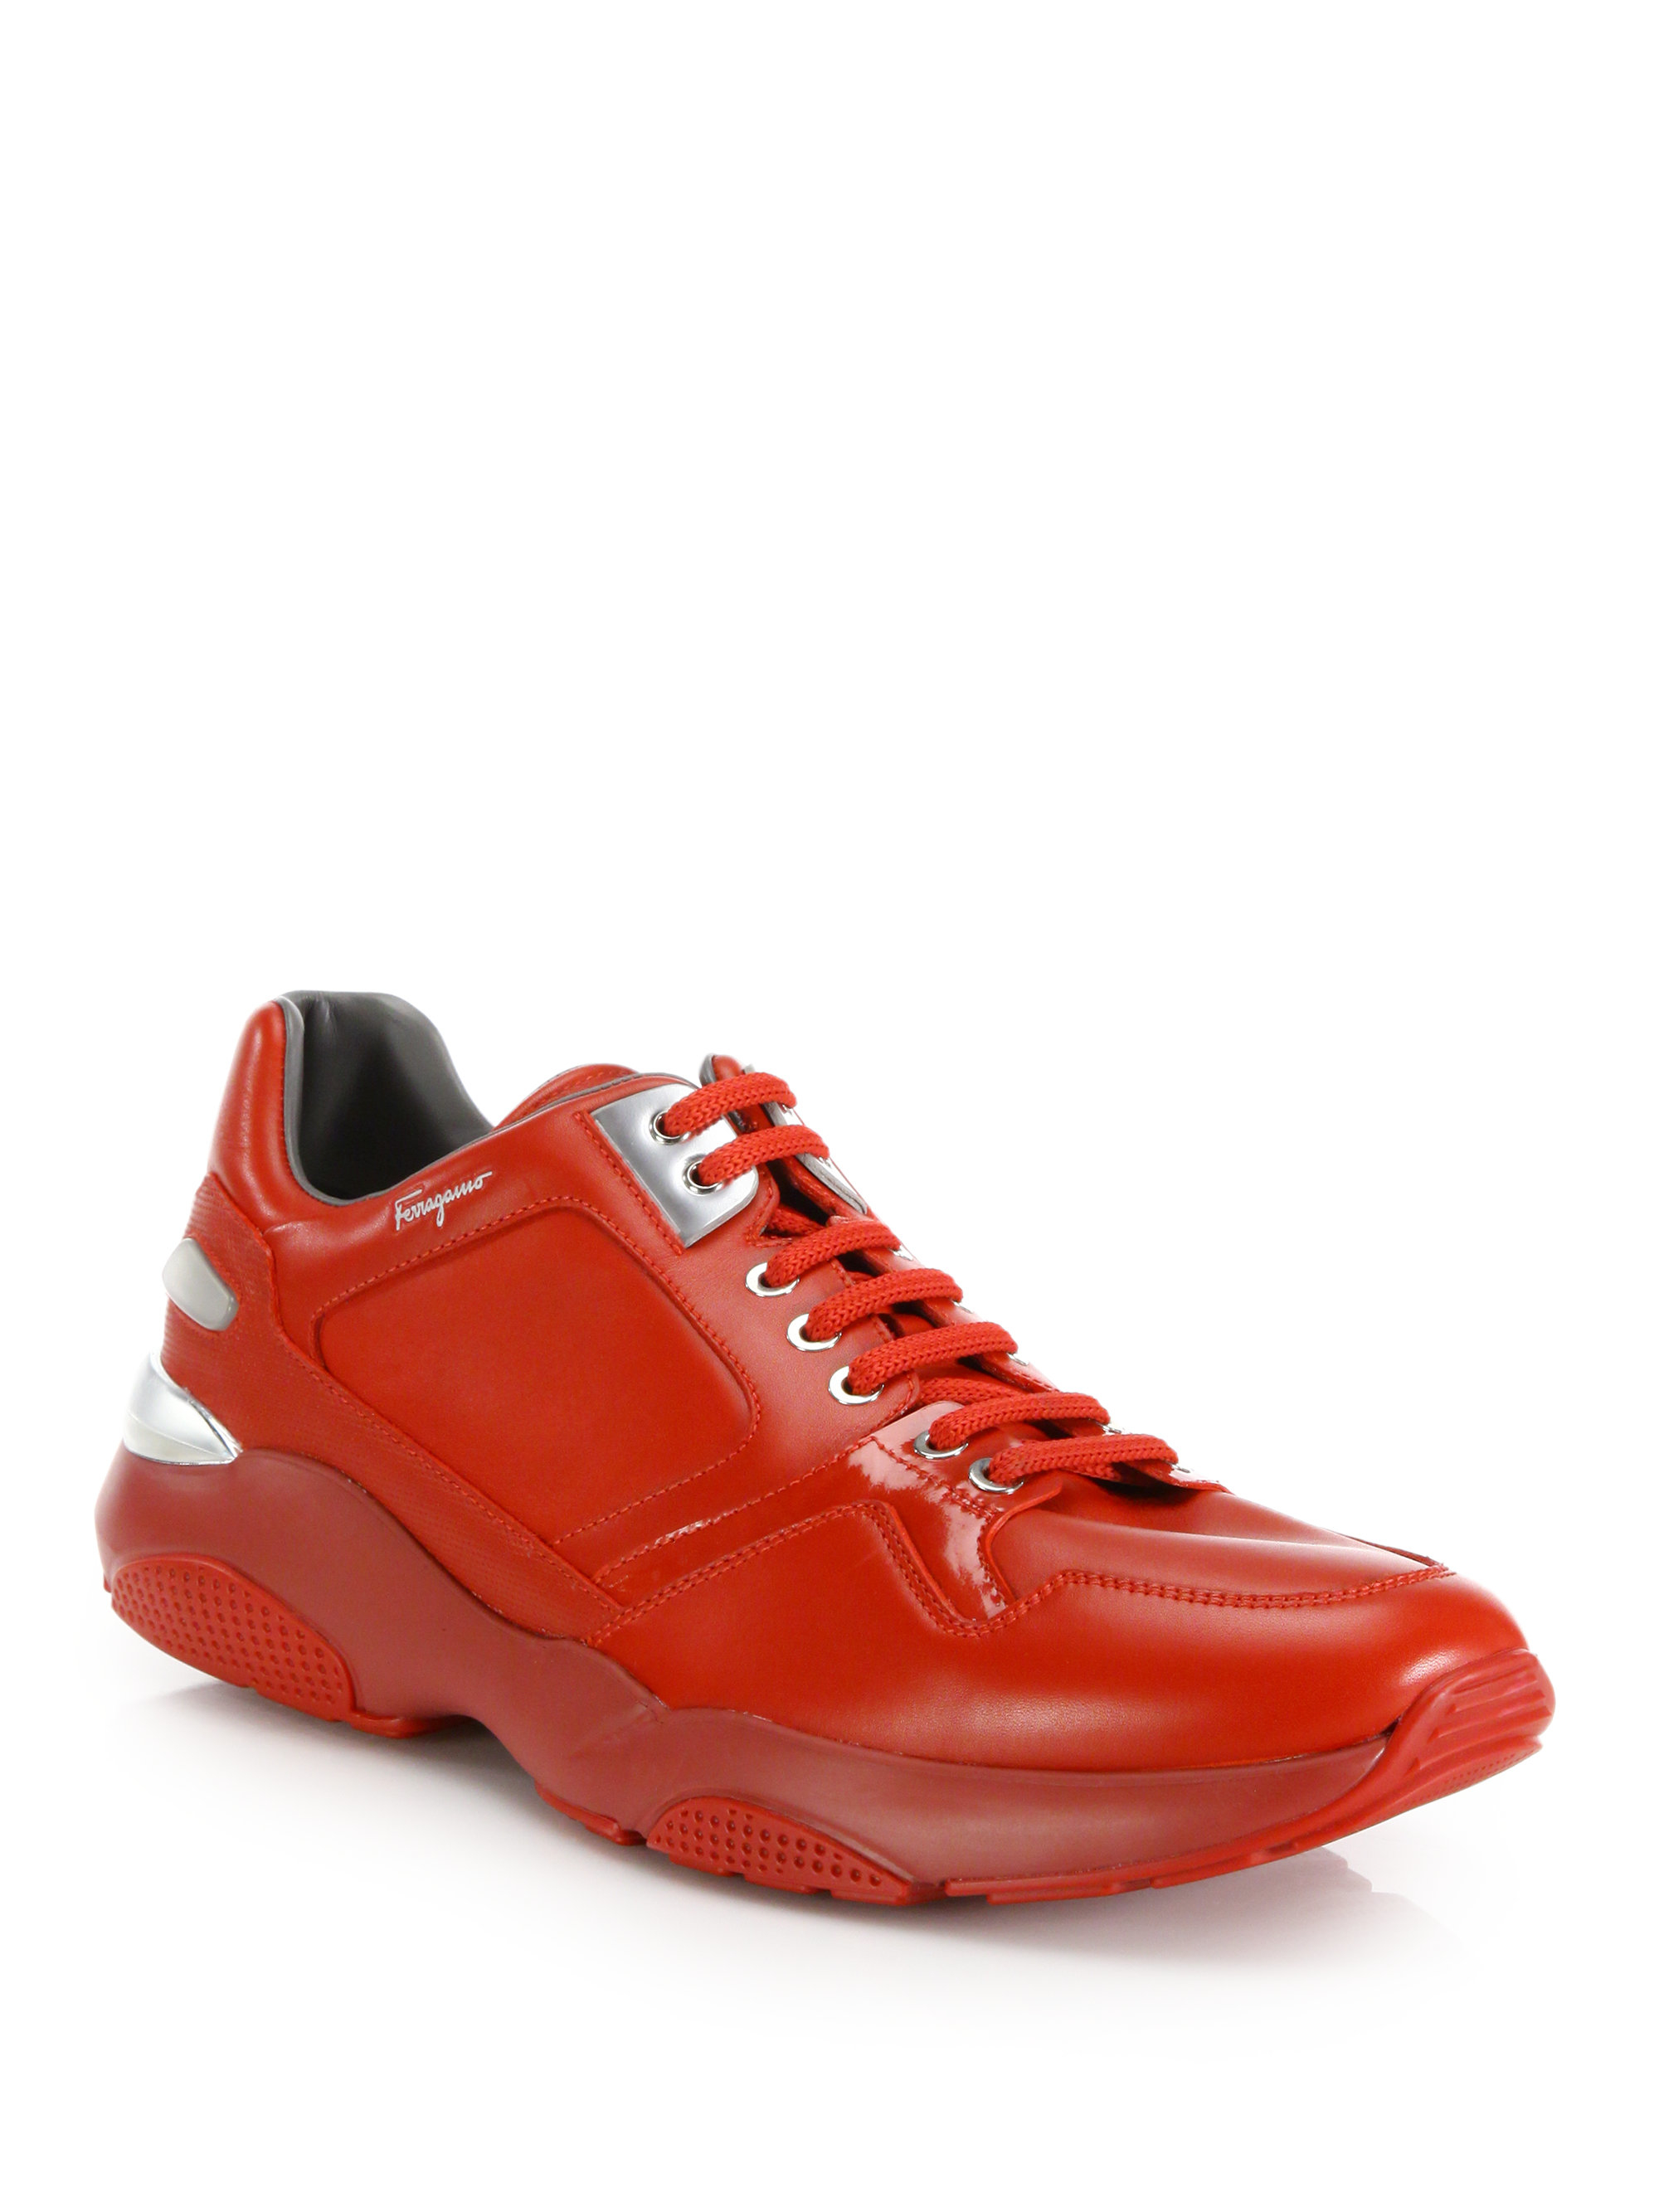 Lyst - Ferragamo Lisbona Tonal Leather Sneakers in Red for Men